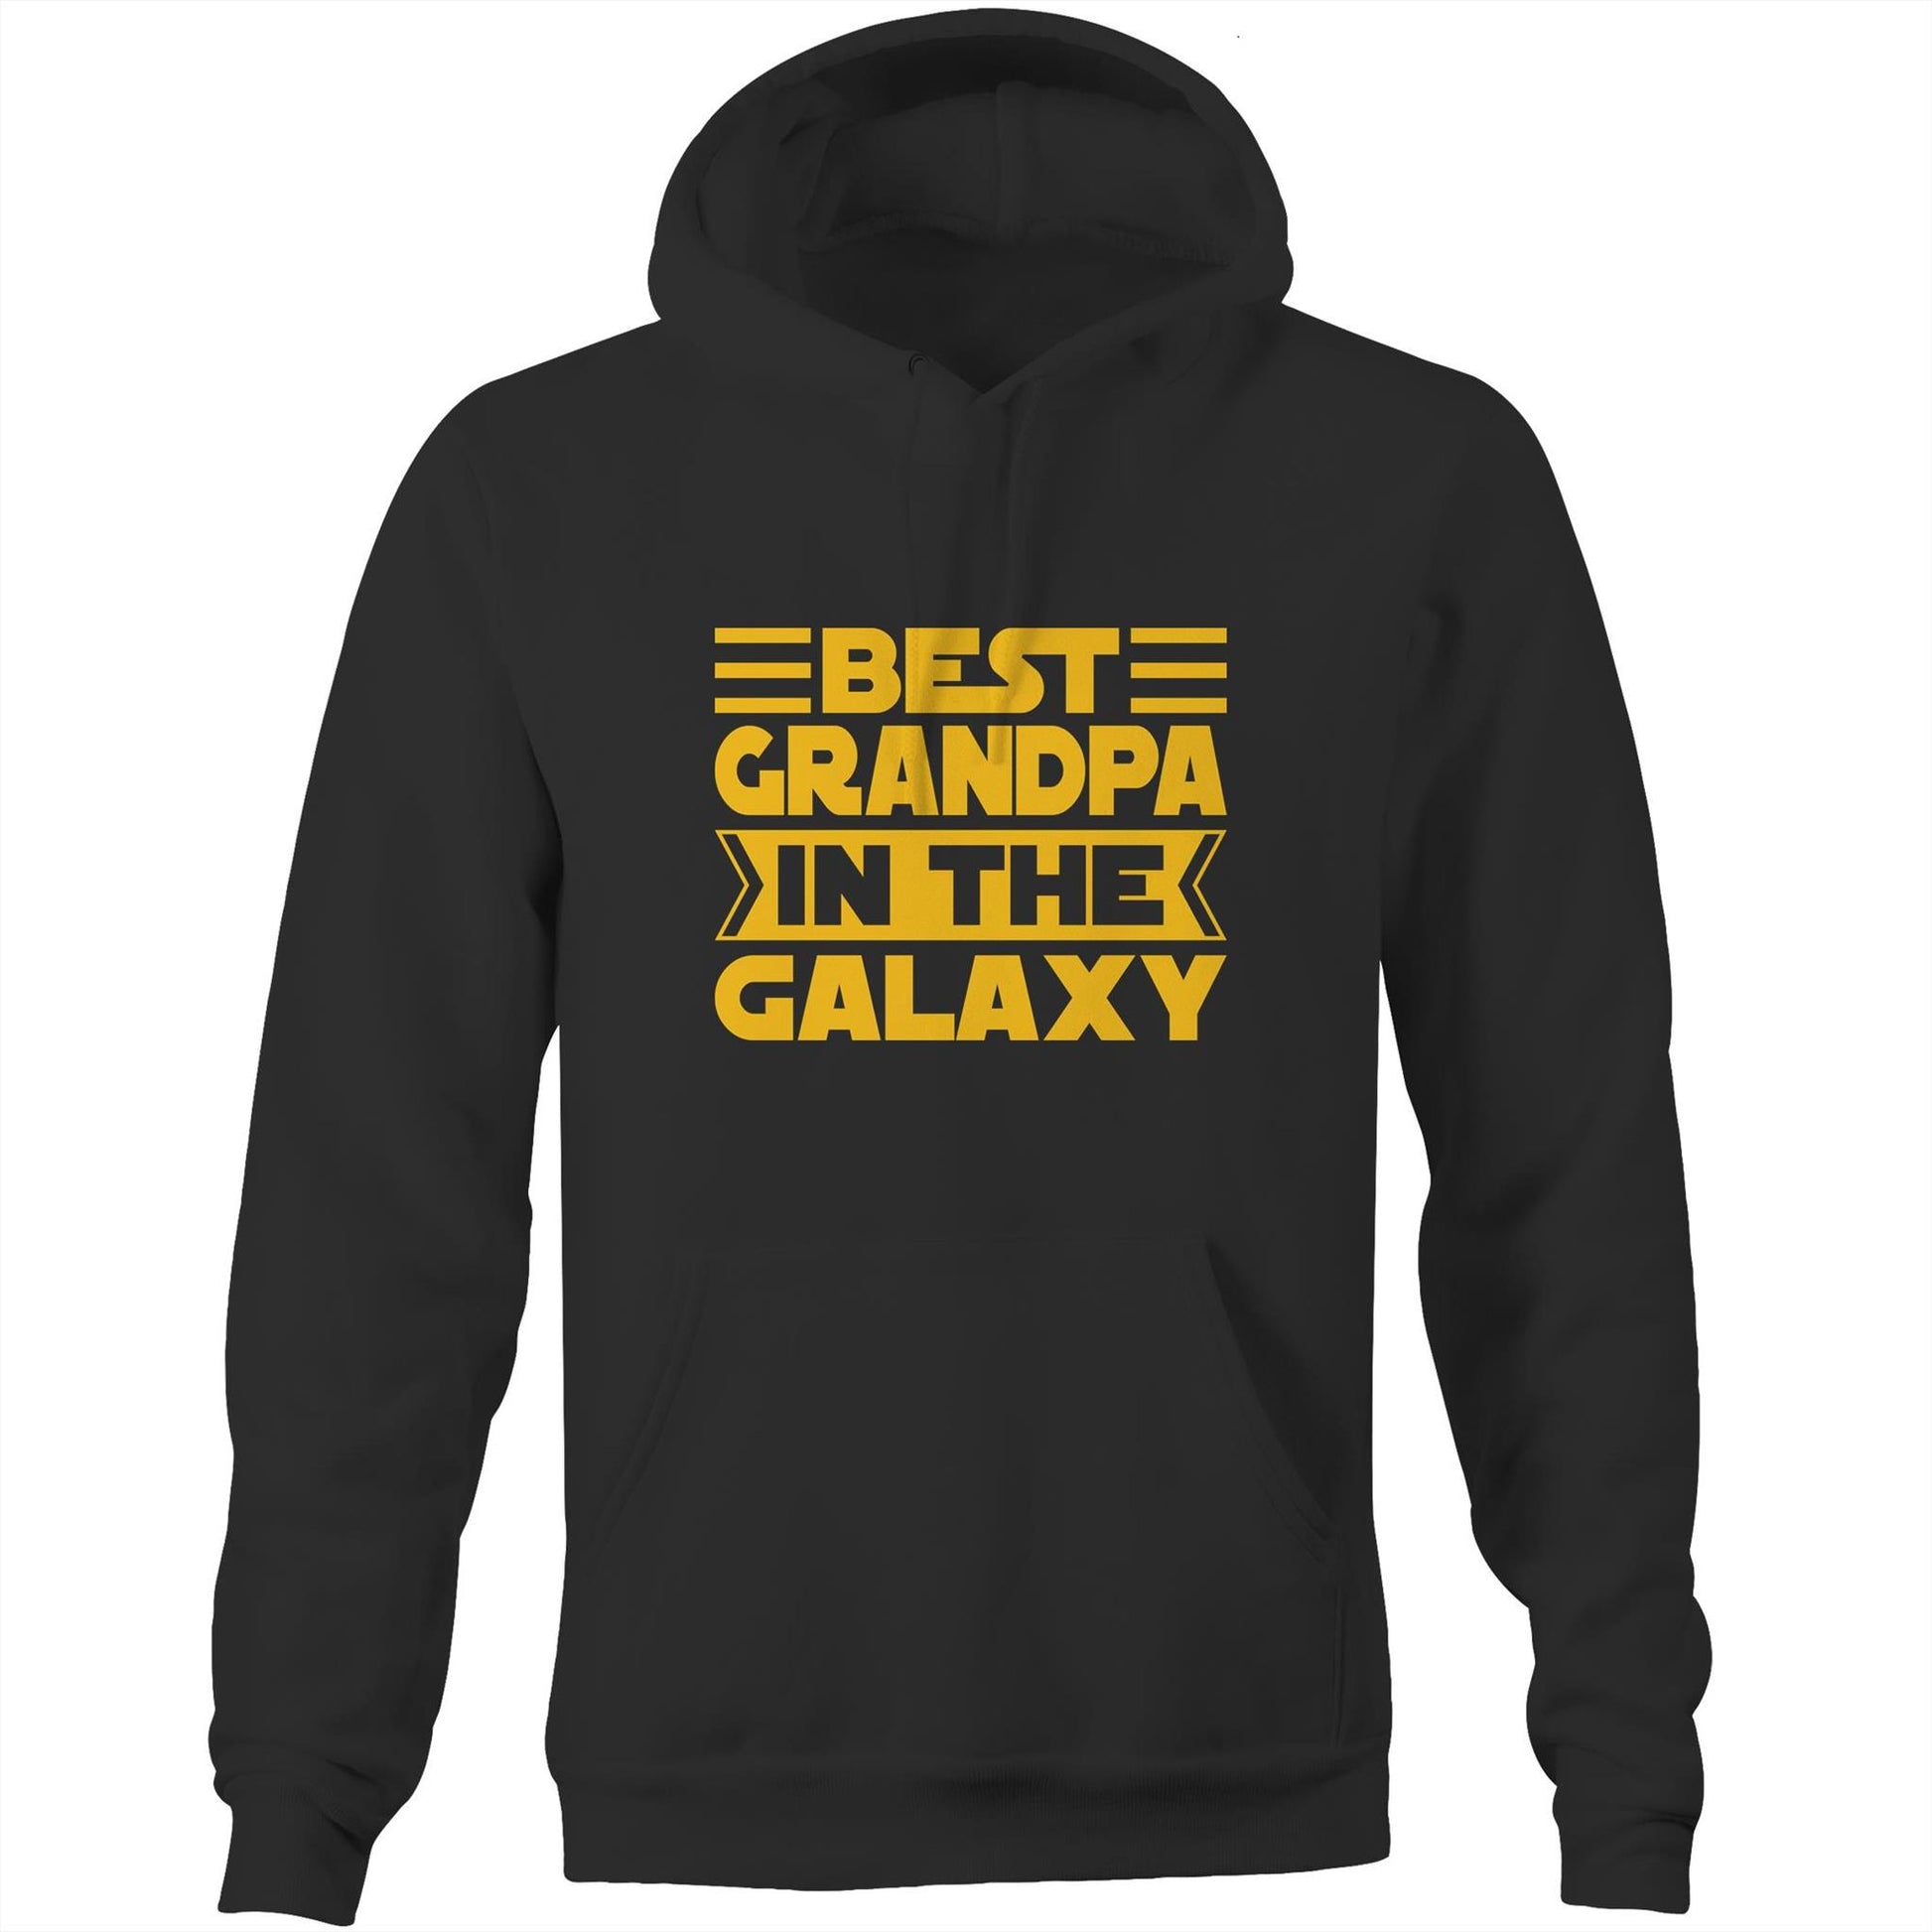 Best Grandpa In The Galaxy - Pocket Hoodie Sweatshirt Black Hoodie Dad